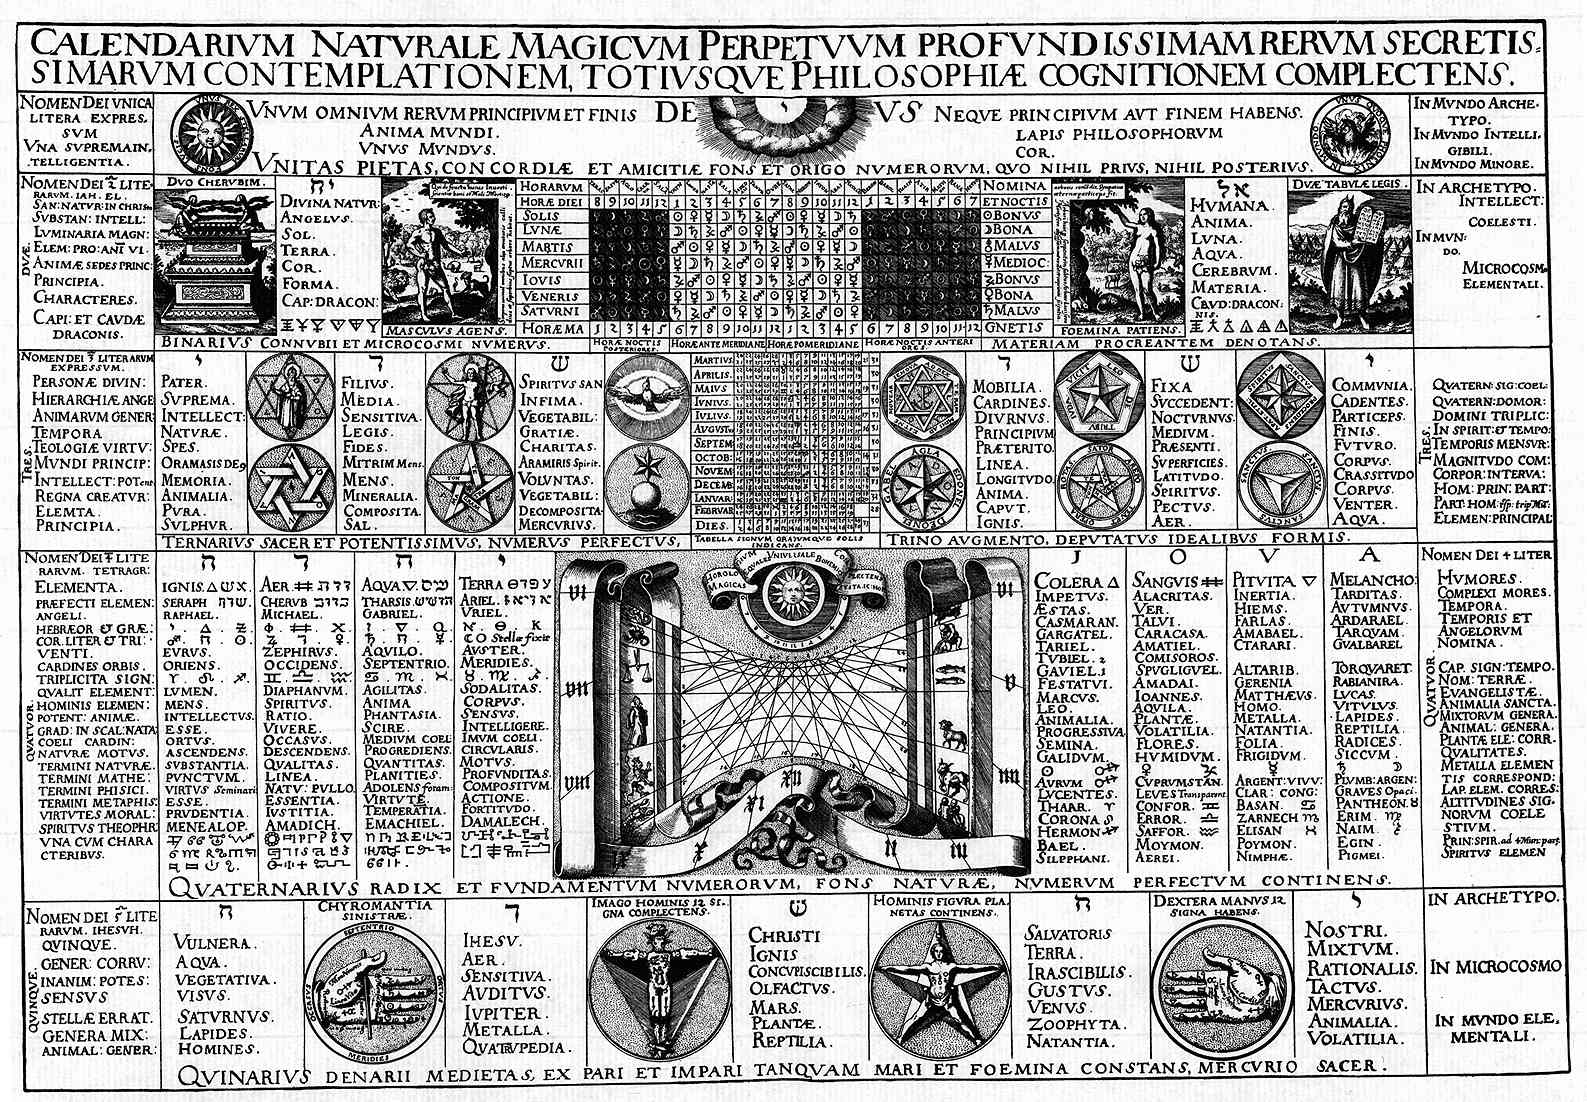 Calendarium Naturale Magicum Perpetuum 1